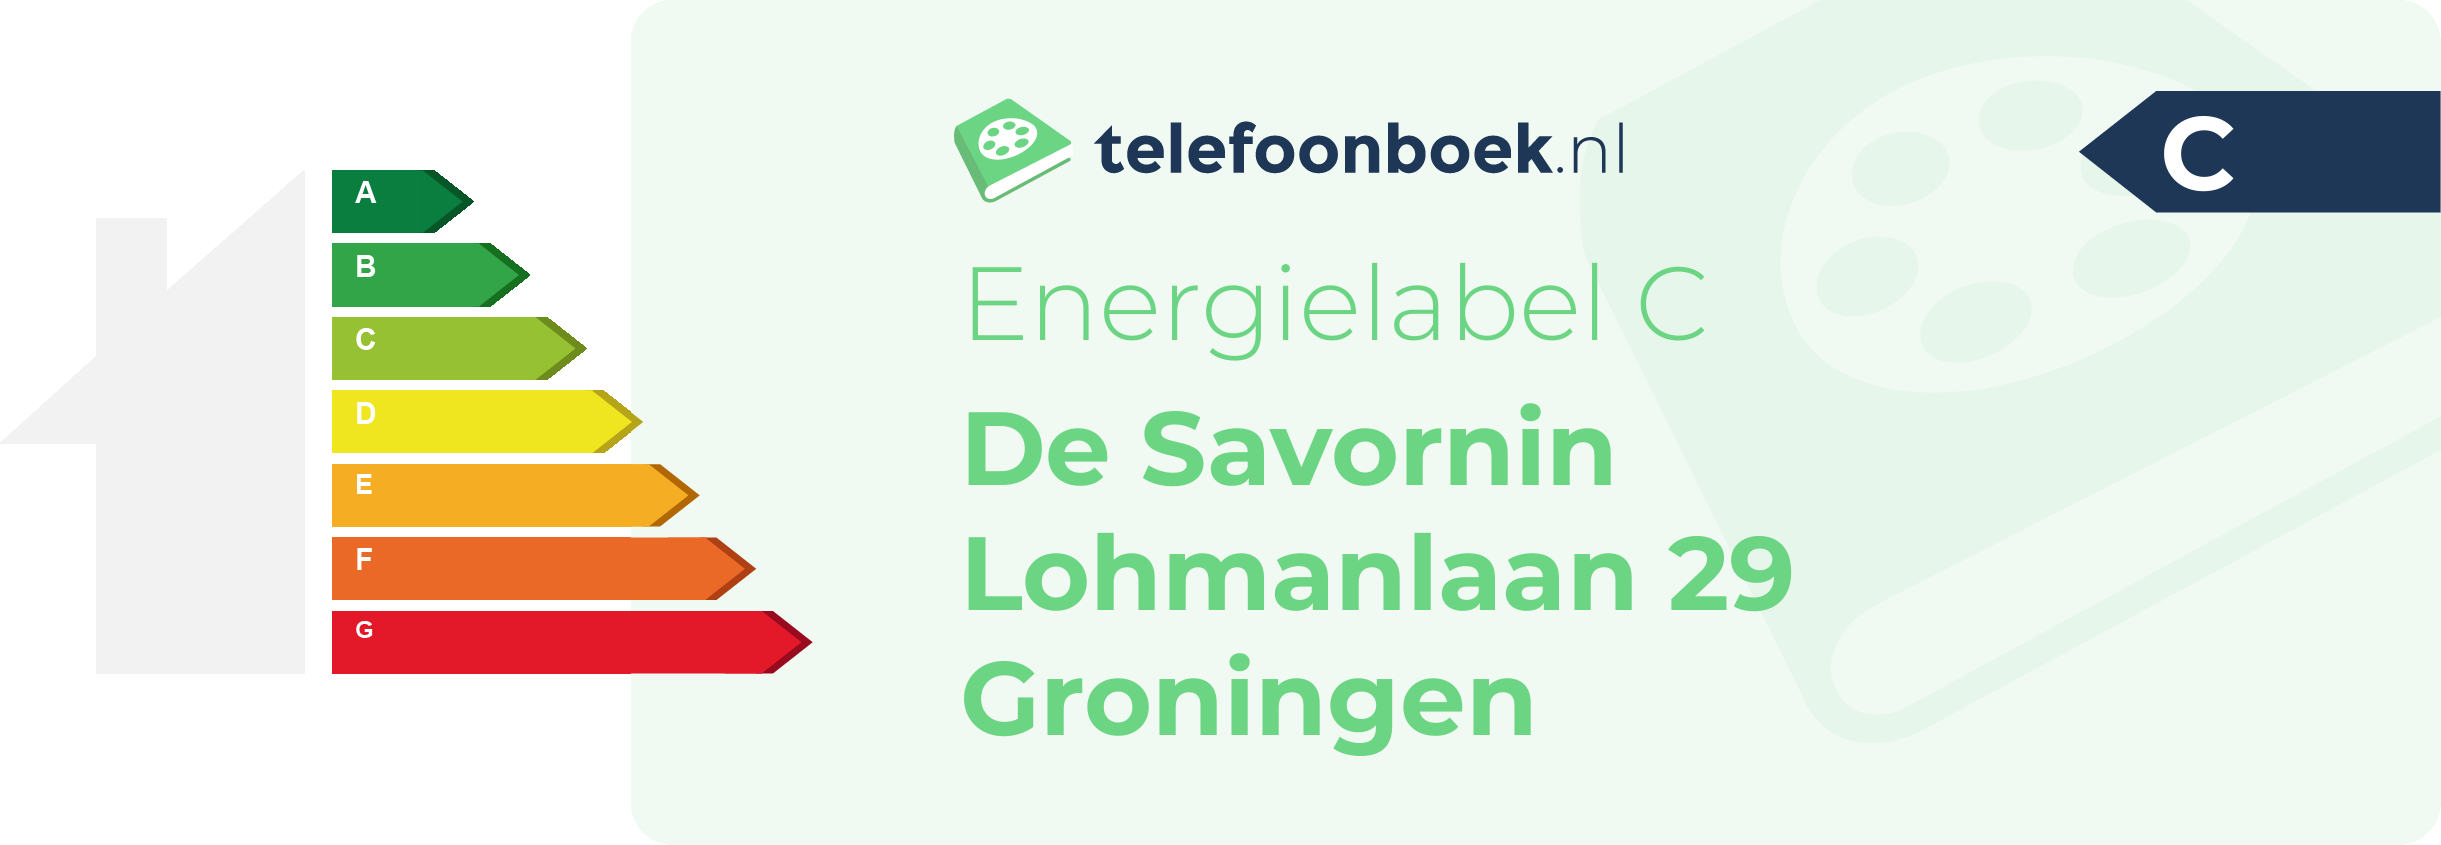 Energielabel De Savornin Lohmanlaan 29 Groningen